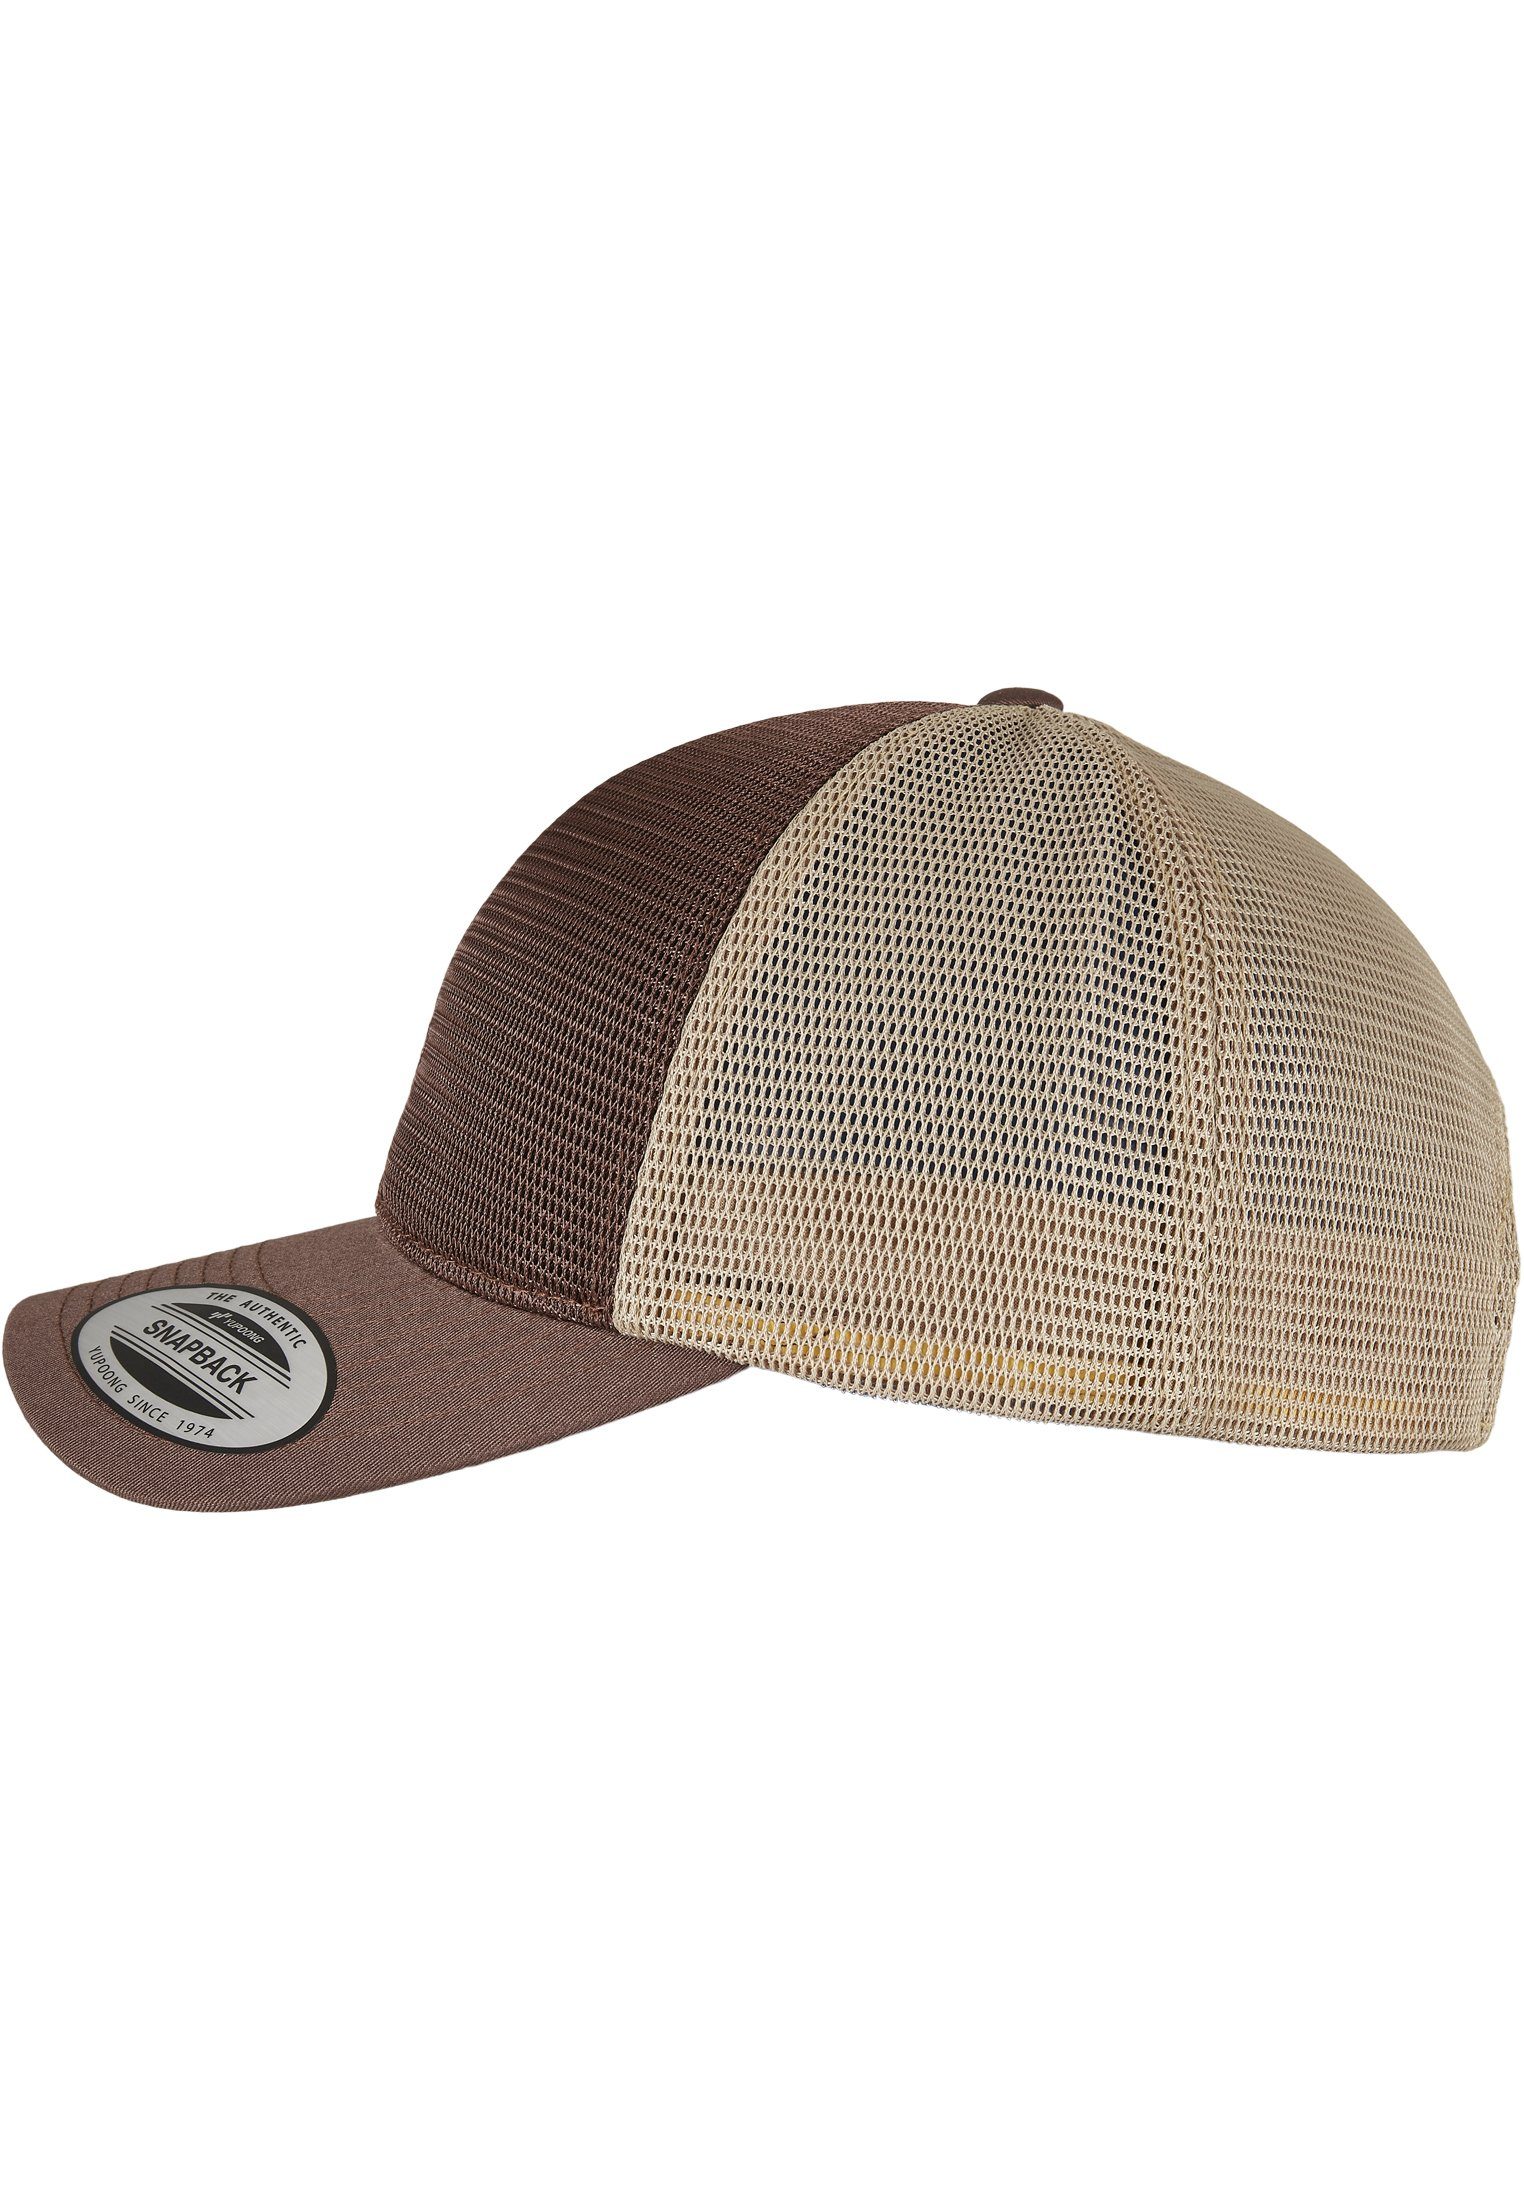 Flexfit Flex Cap Accessoires Cap 360° brown/khaki Omnimesh 2-Tone